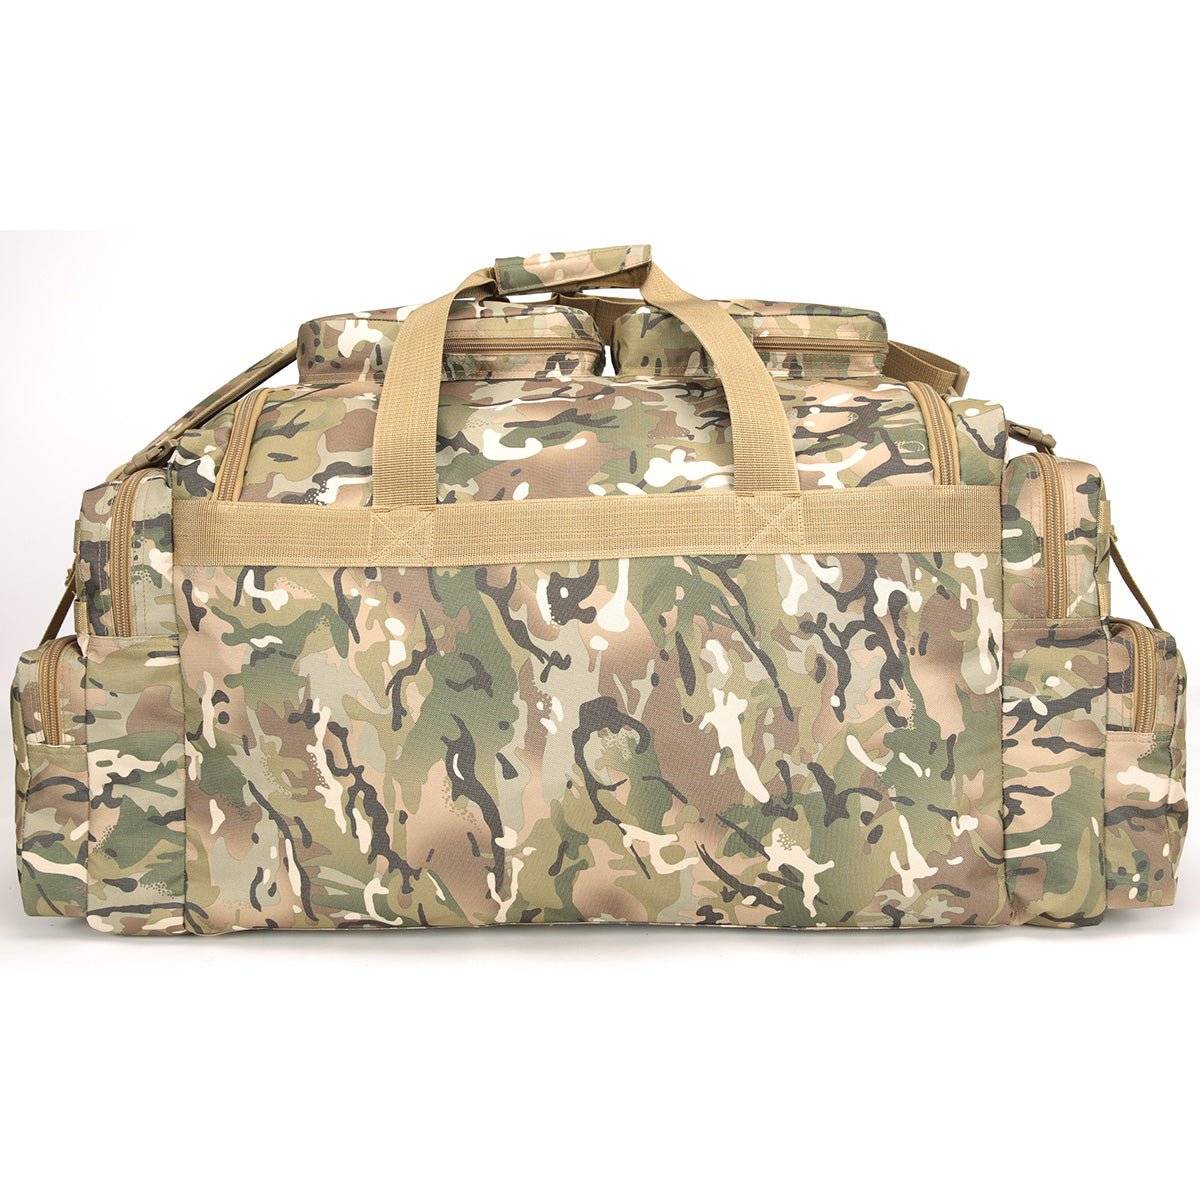 Kombat Saxon 125L Holdall Large Carry Bag - John Bull Clothing